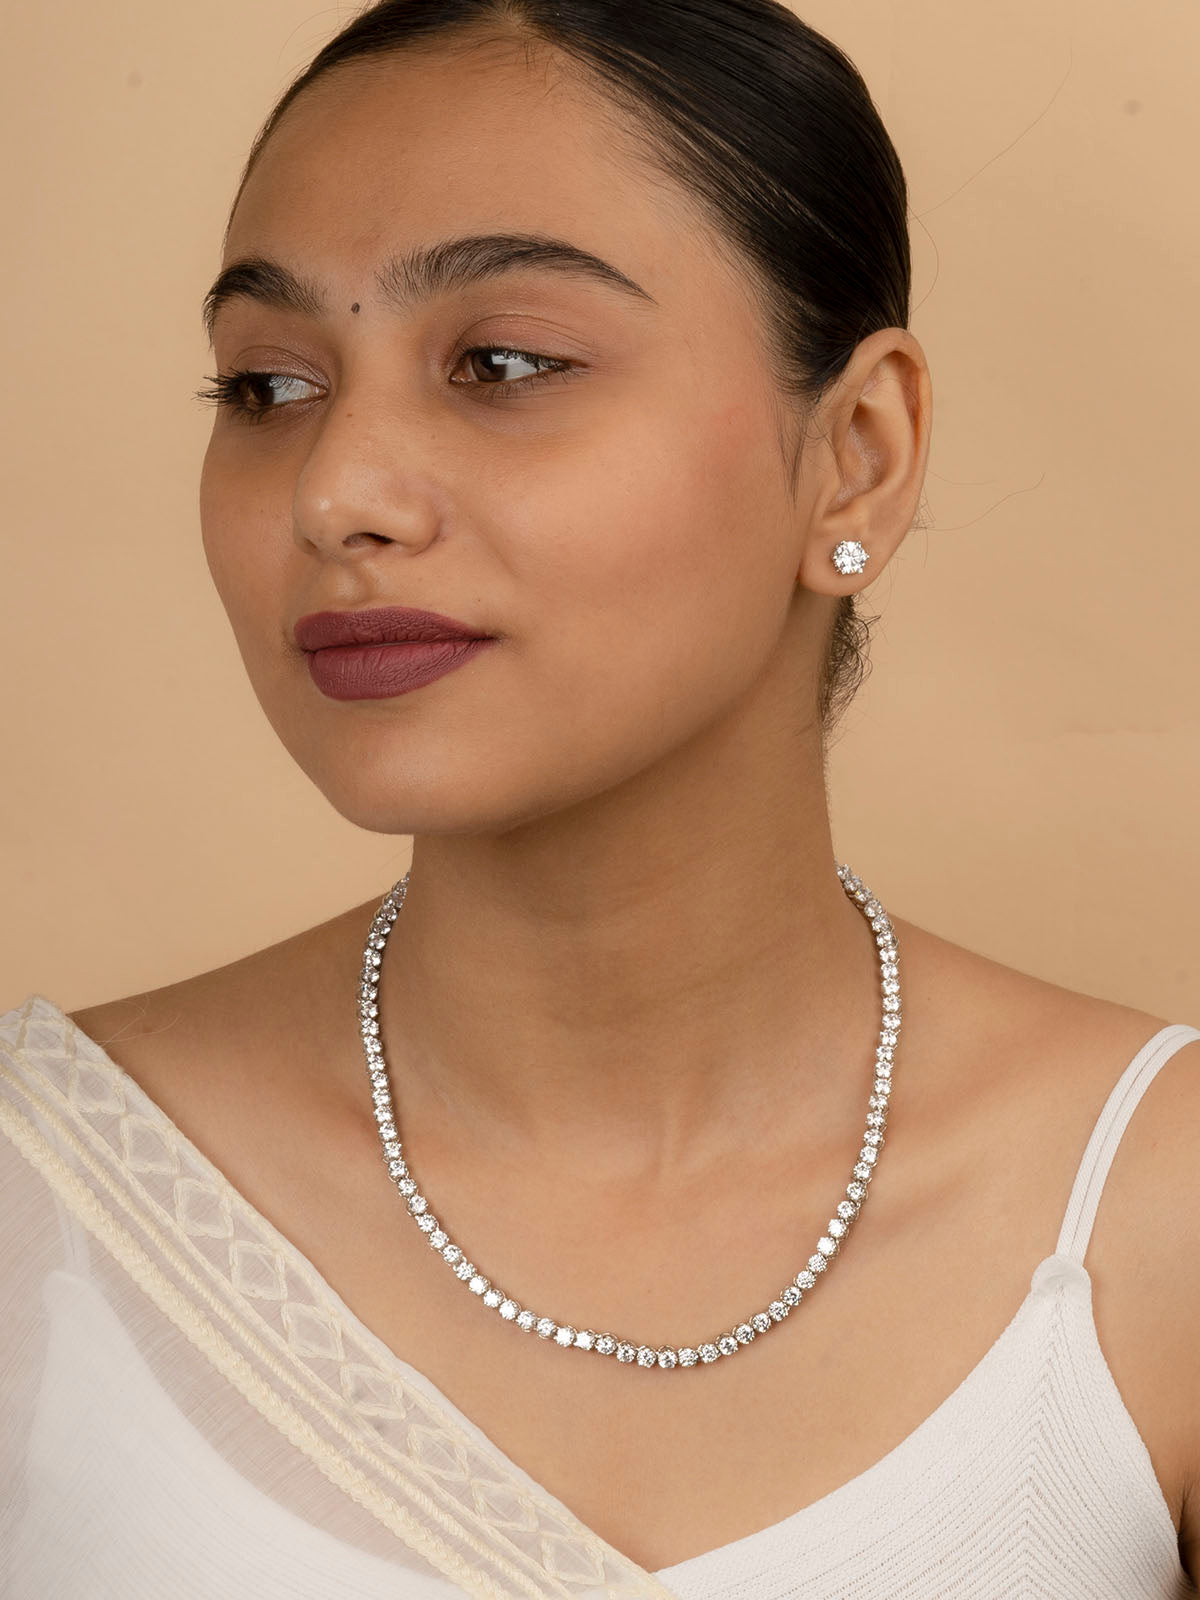 CZSET46 - White Color Faux Diamond Medium Delicate Necklace Sets